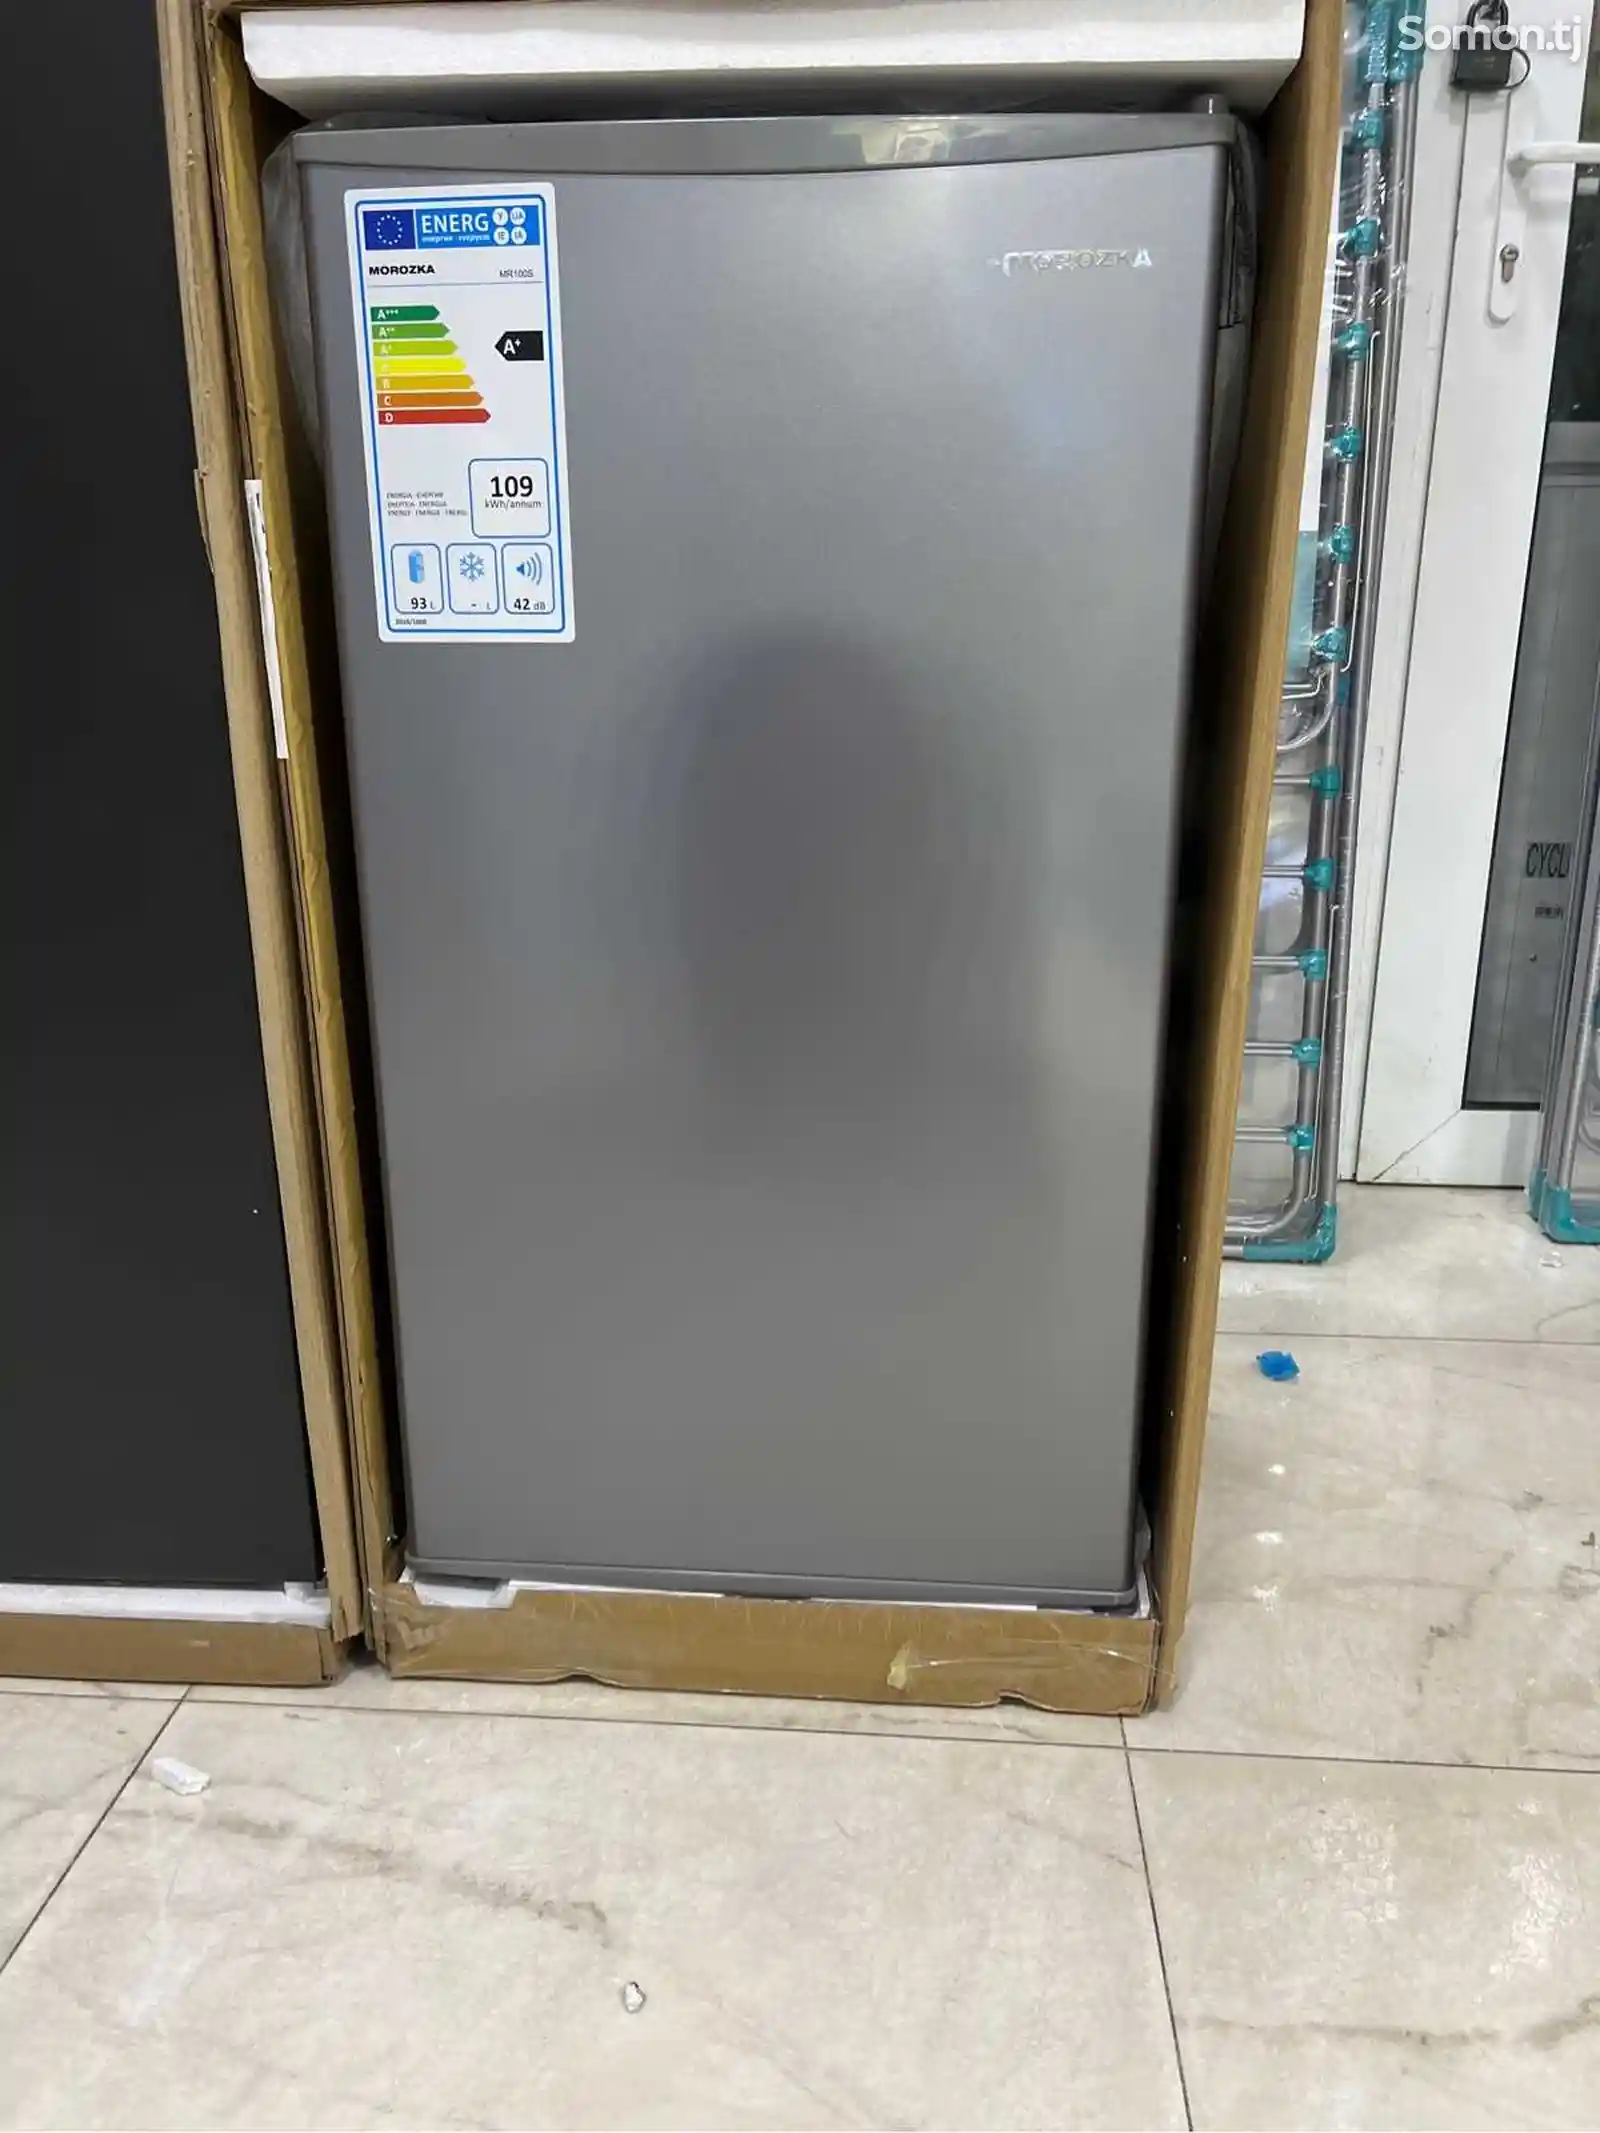 Холодильник Morozka-1